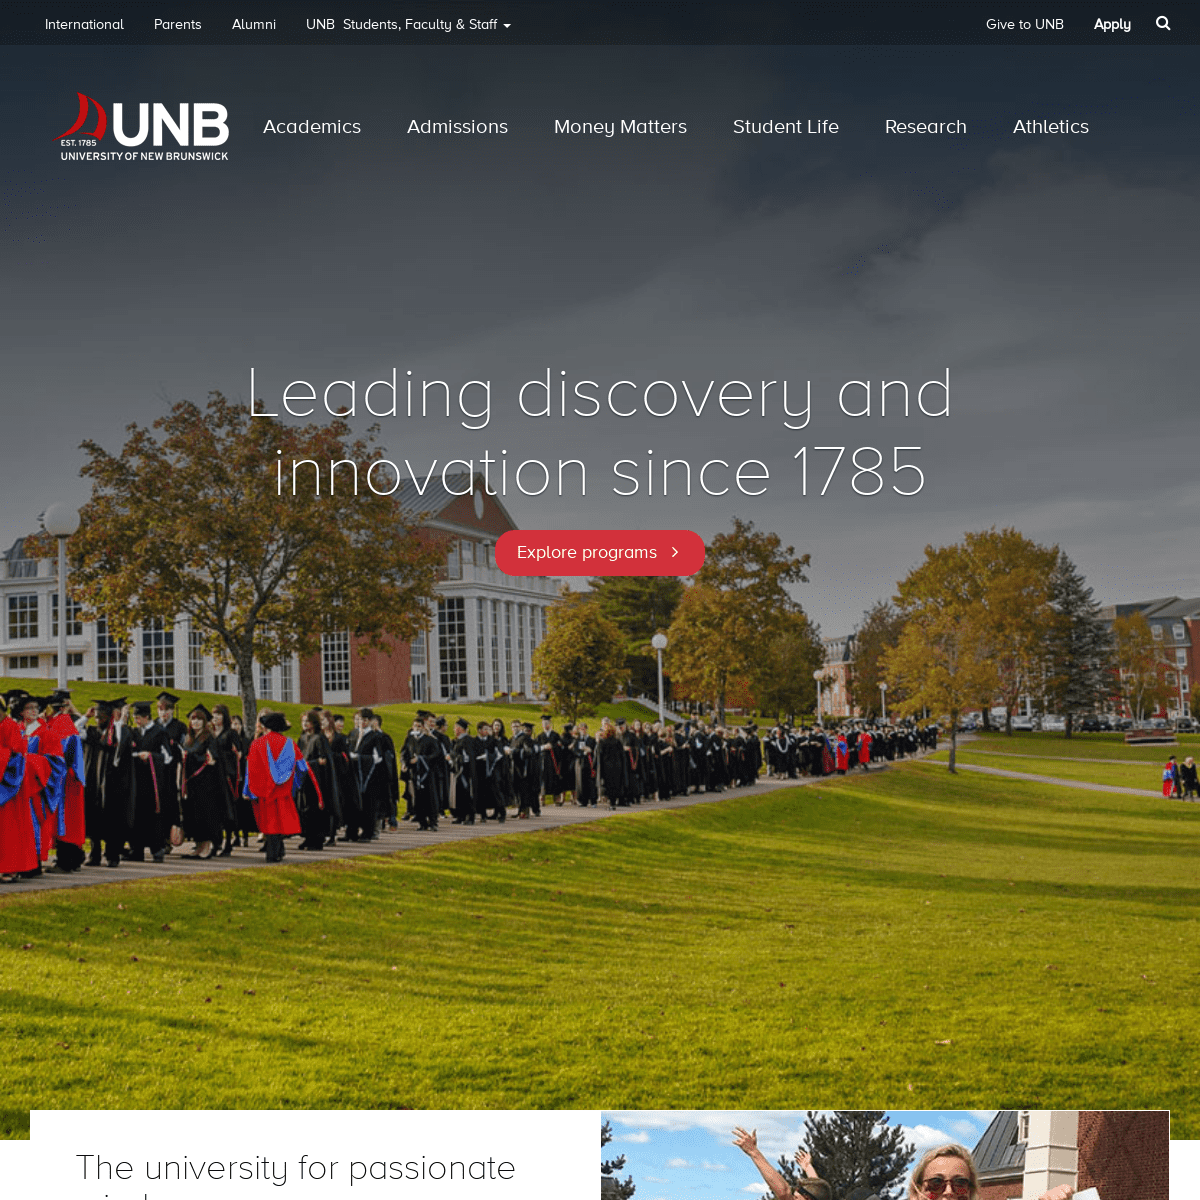 University of New Brunswick | UNB